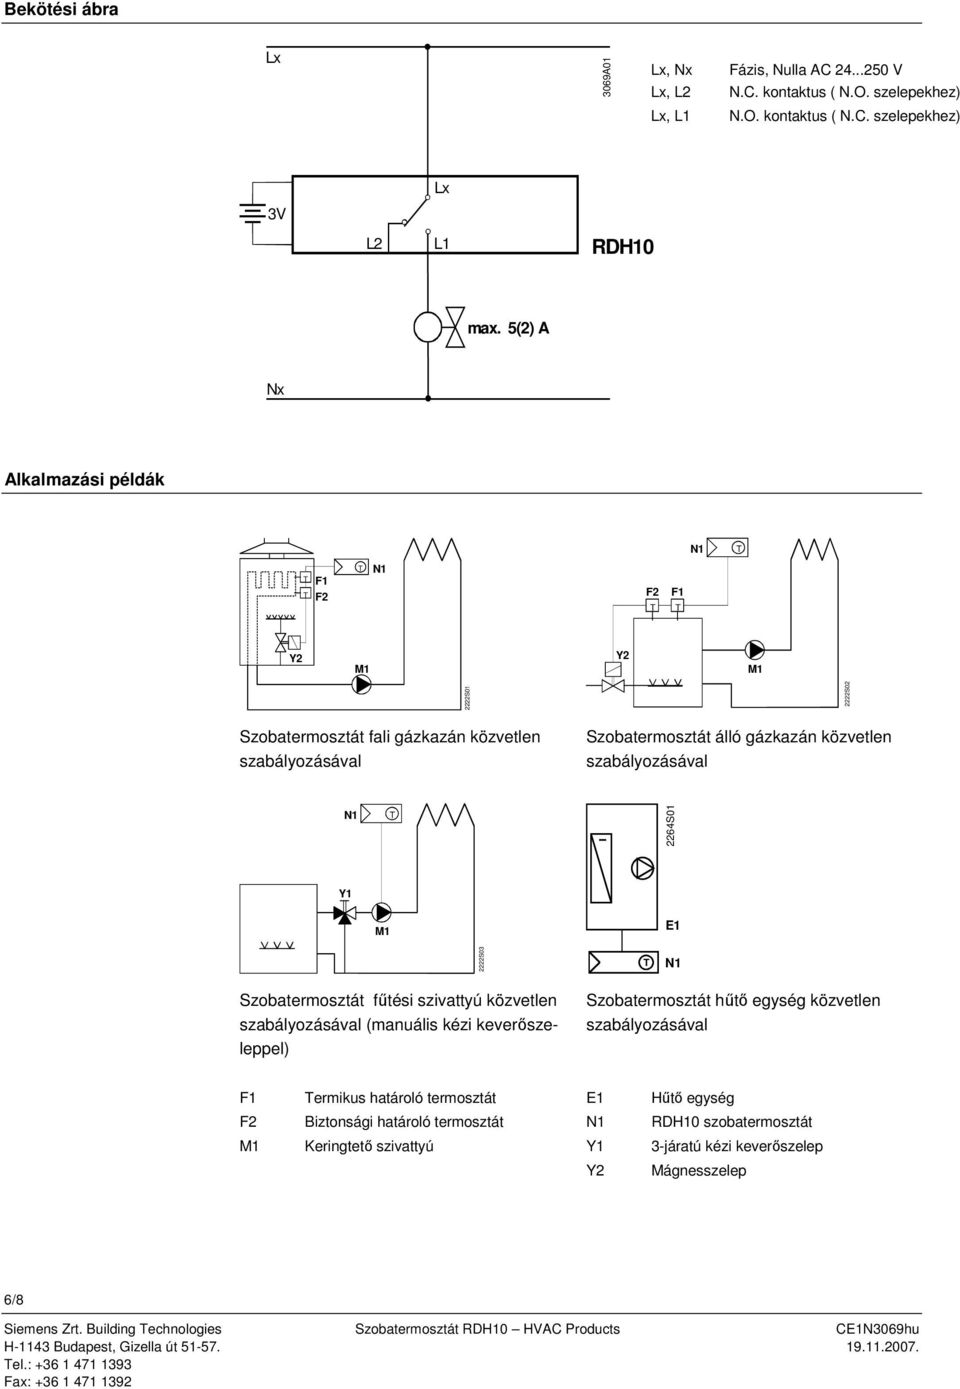 2222S03 Szobatermosztát fűtési szivattyú közvetlen szabályozásával (manuális kézi keverőszeleppel) Szobatermosztát hűtő egység közvetlen szabályozásával F1 ermikus határoló termosztát E1 Hűtő egység